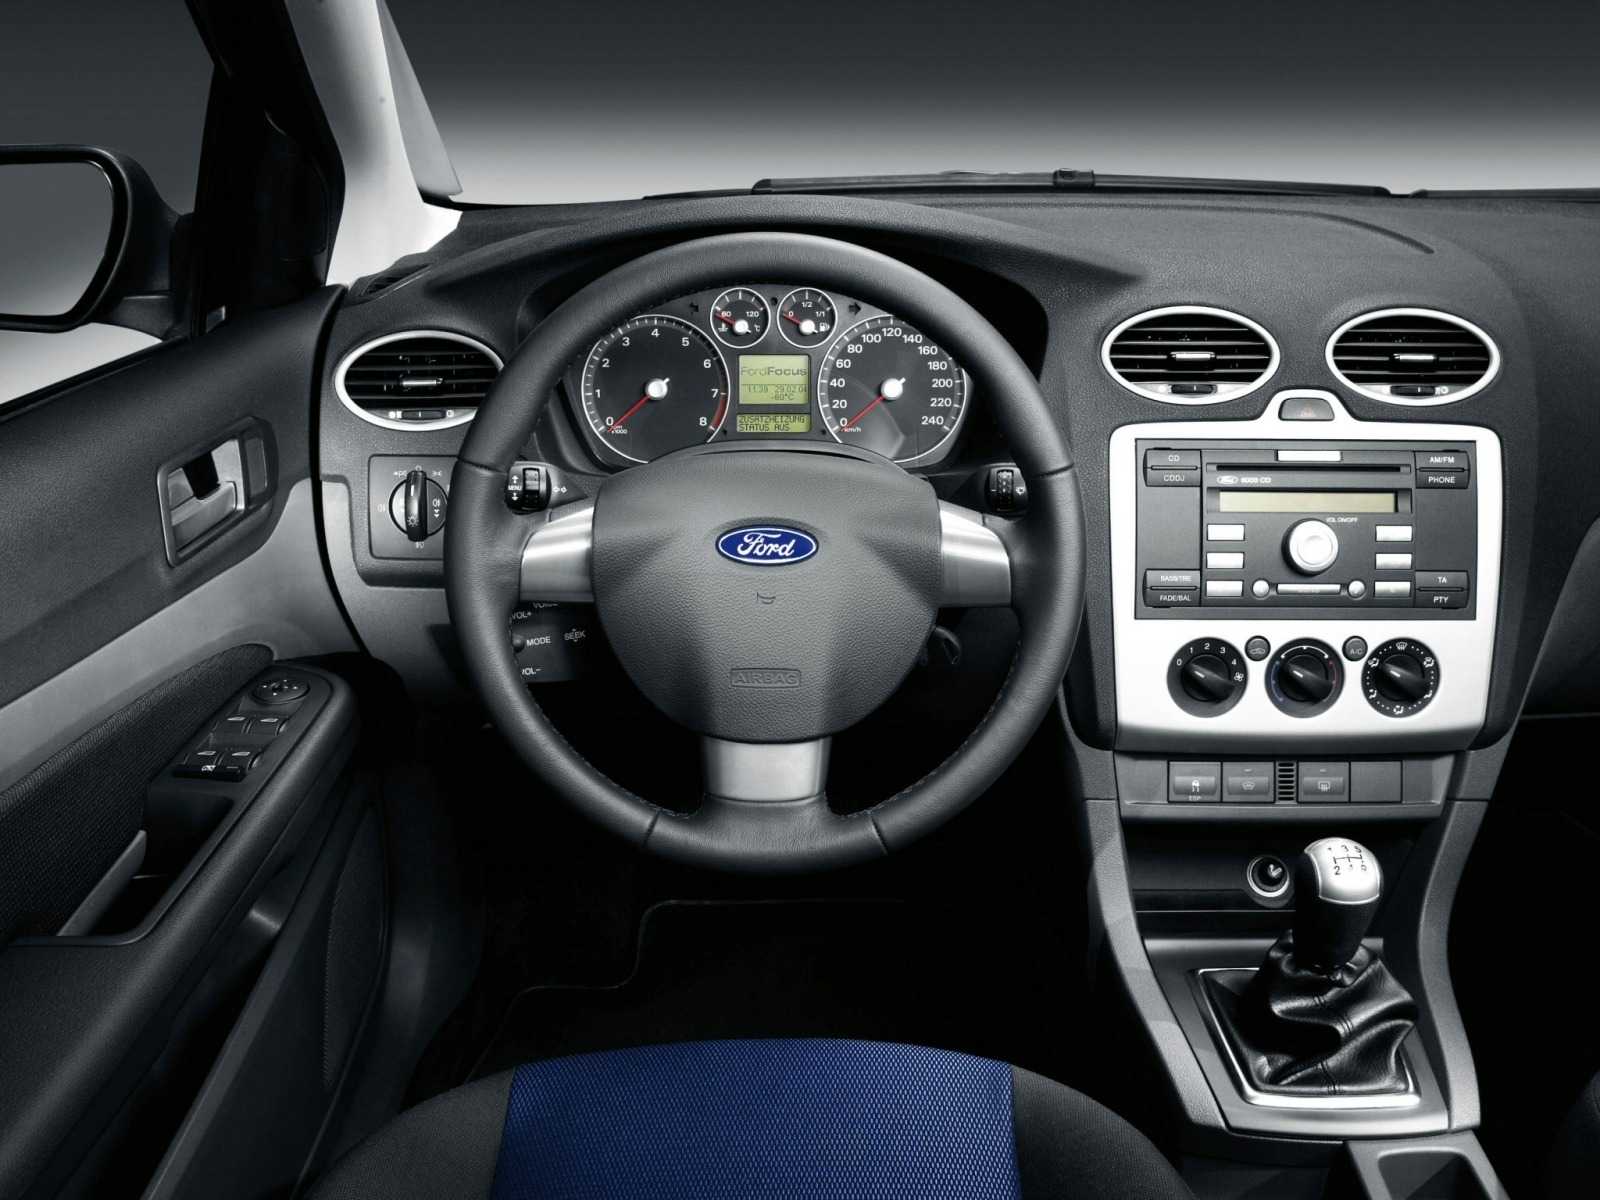 Ford focus estate — форд фокус универсал подробный обзор | движение24